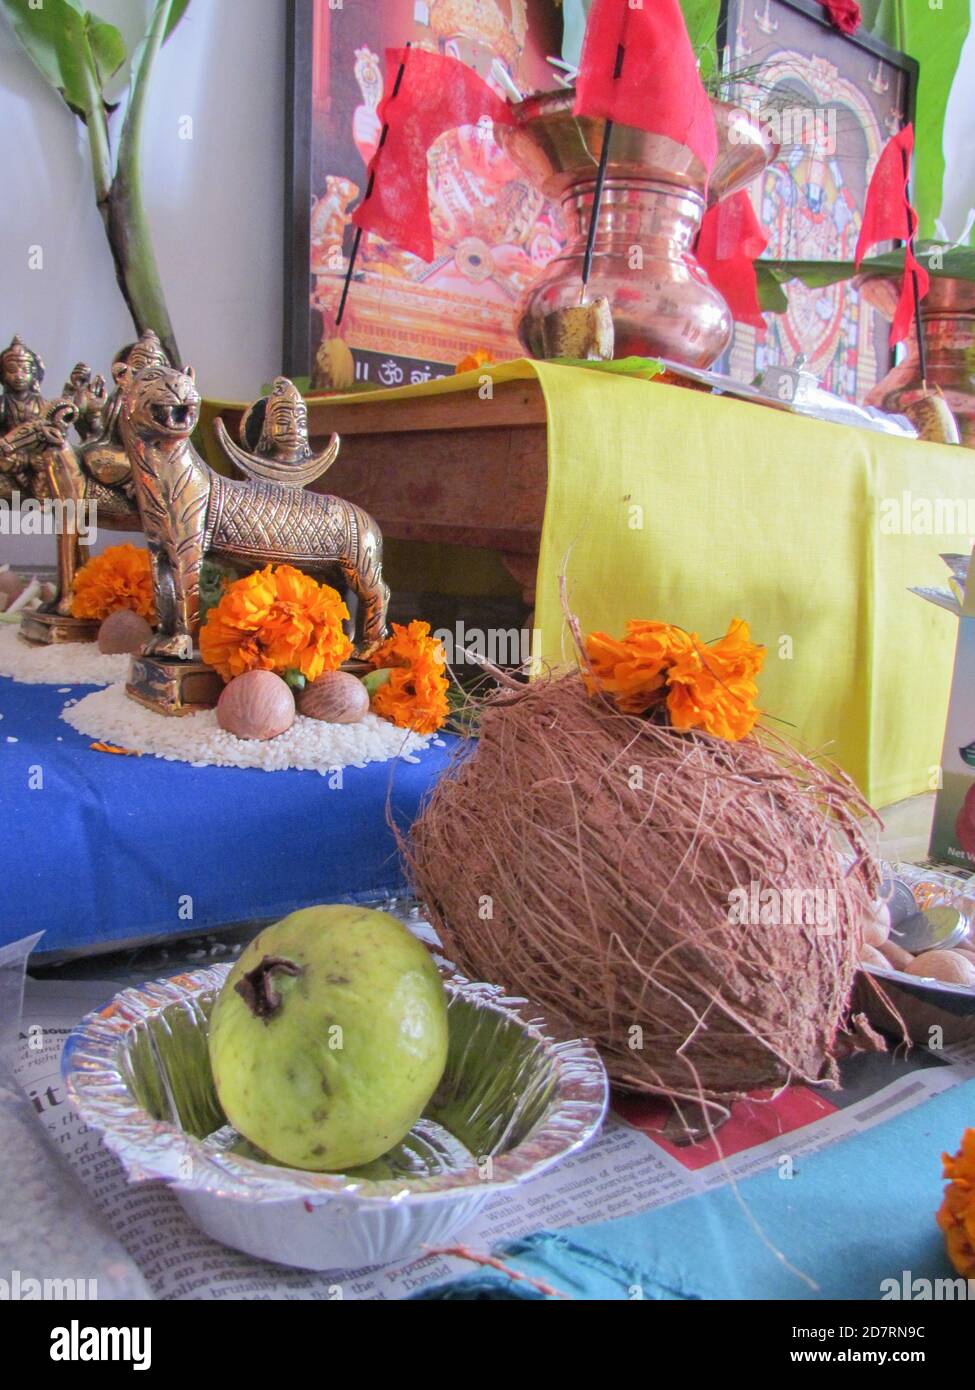 Fruits et autres ingrédients conservés comme offrandes à Godsbefore prière Selon les rituels hindous Banque D'Images